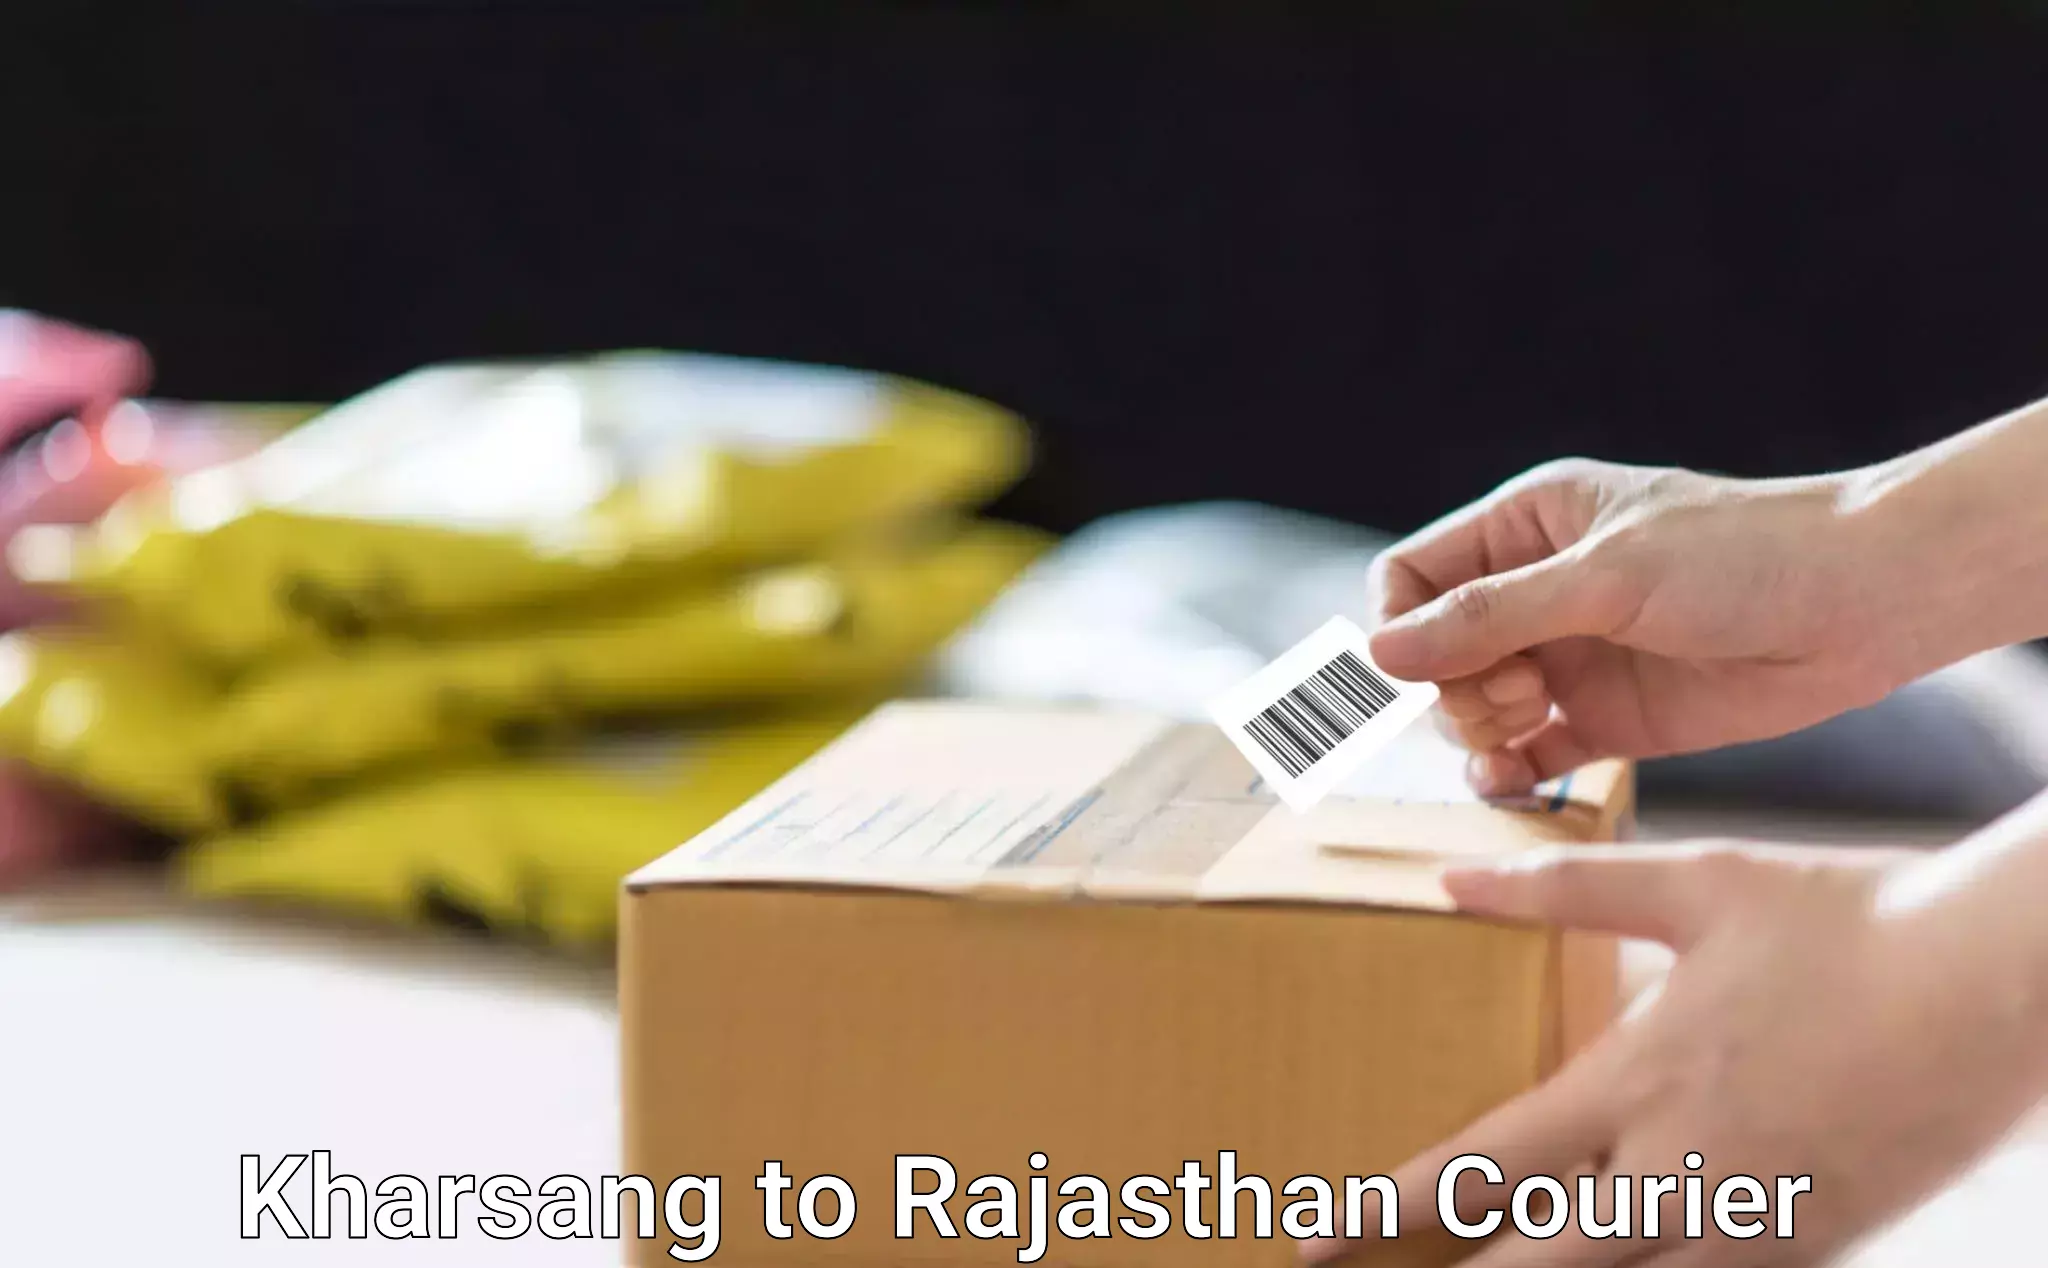 Custom courier packaging Kharsang to Jaisalmer